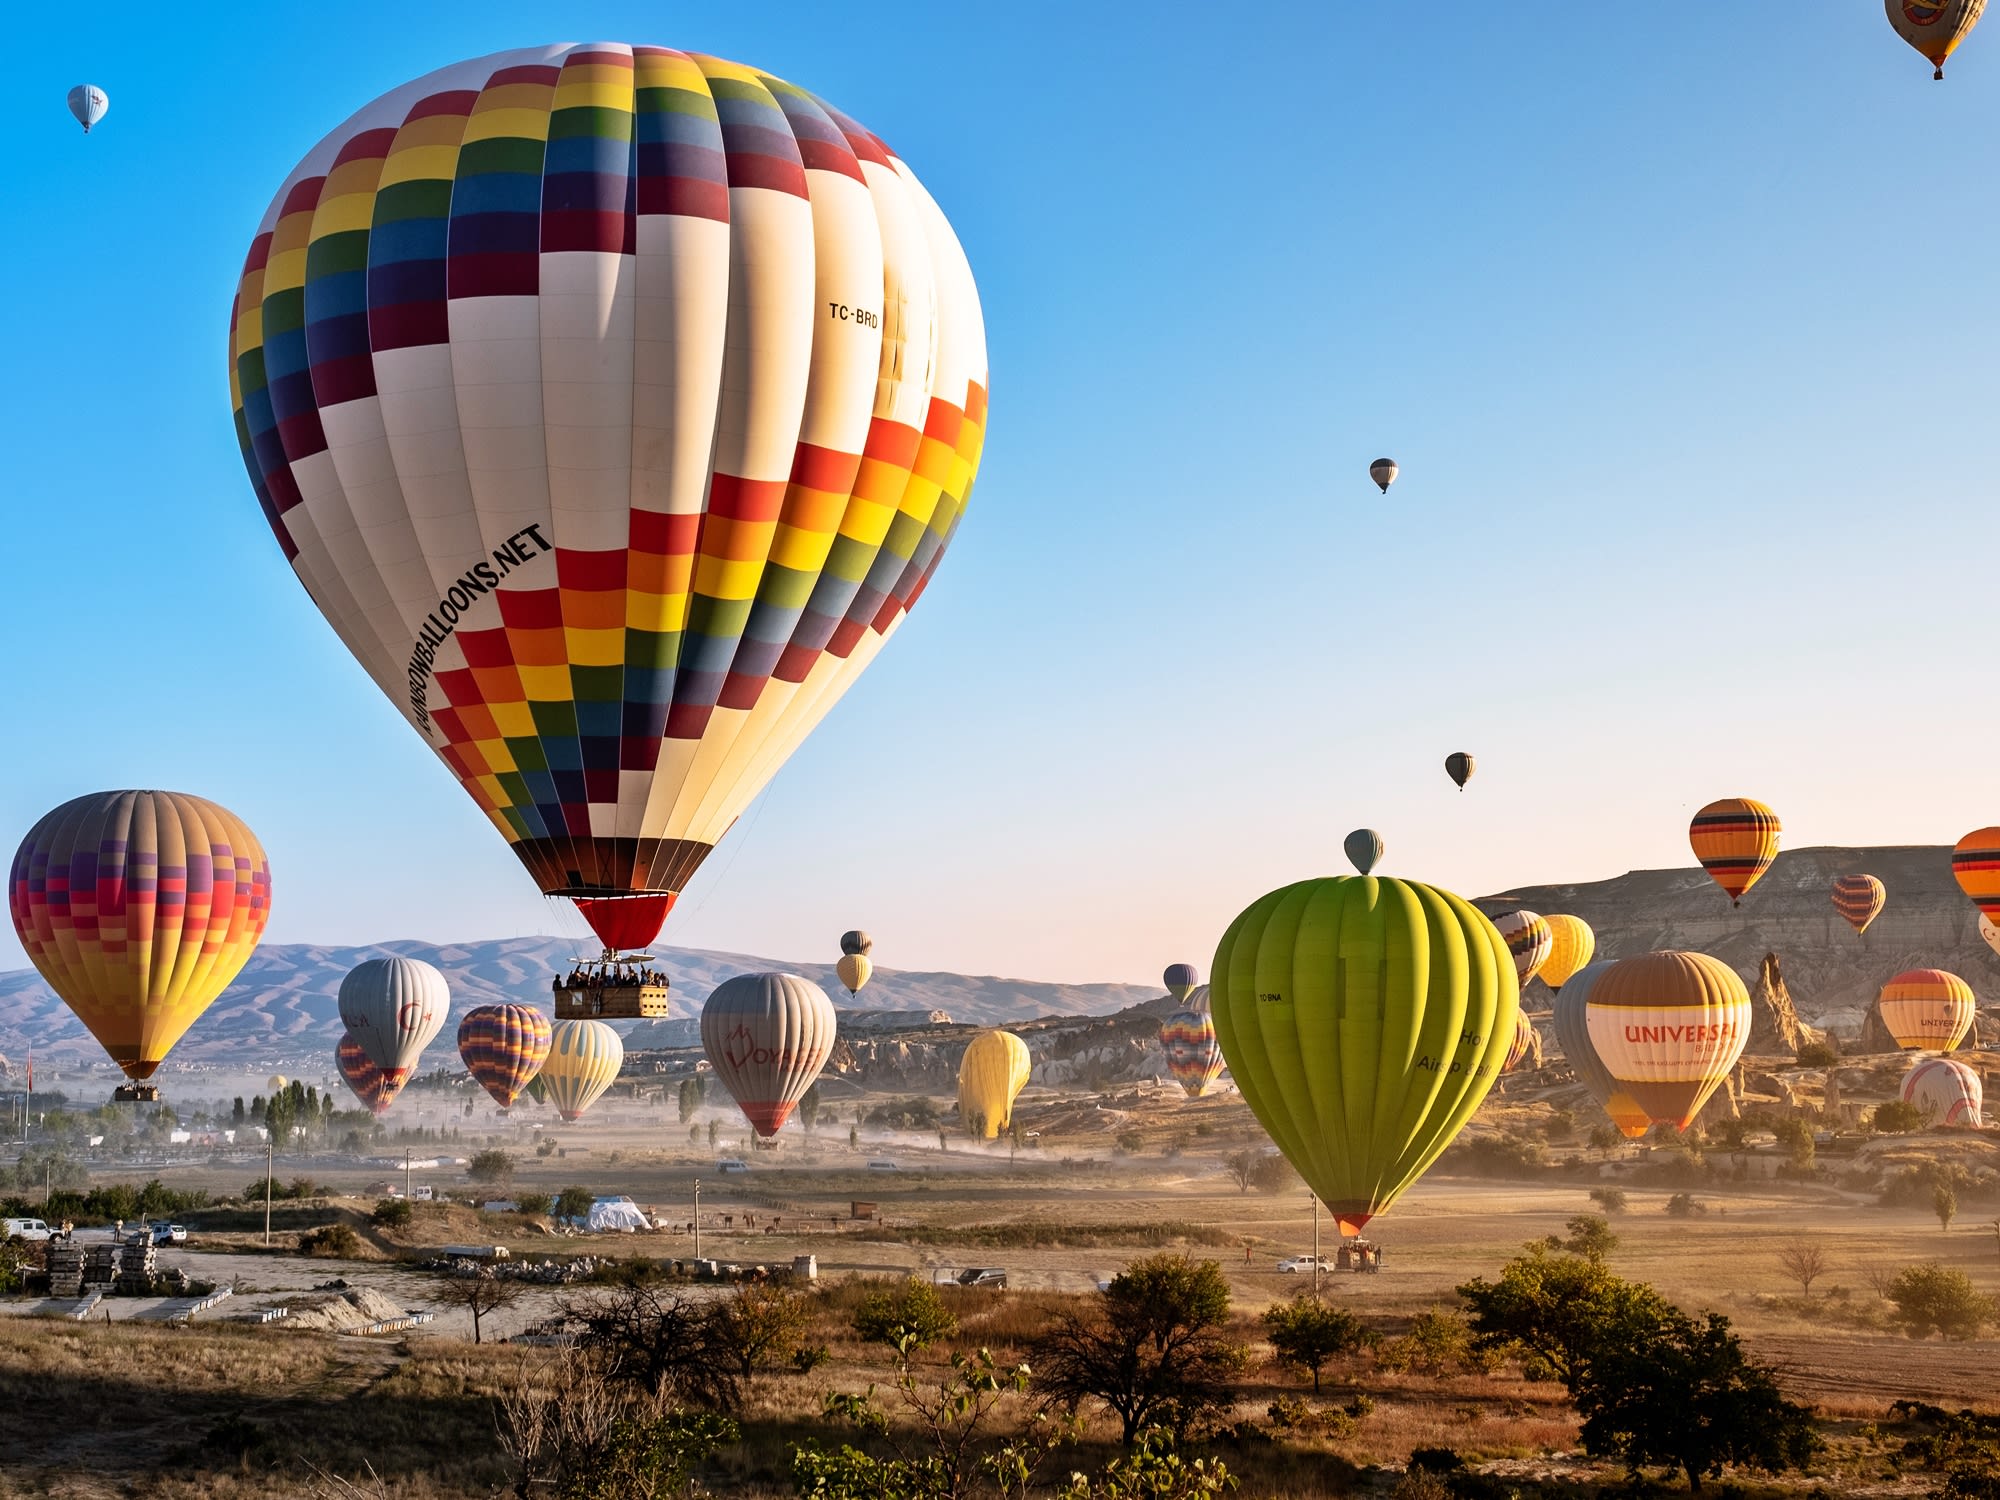 Verstrooien Verrijken Durven Cappadocia Hot Air Balloon Tour tours, activities, fun things to do in  Cappadocia(Turkey)｜VELTRA